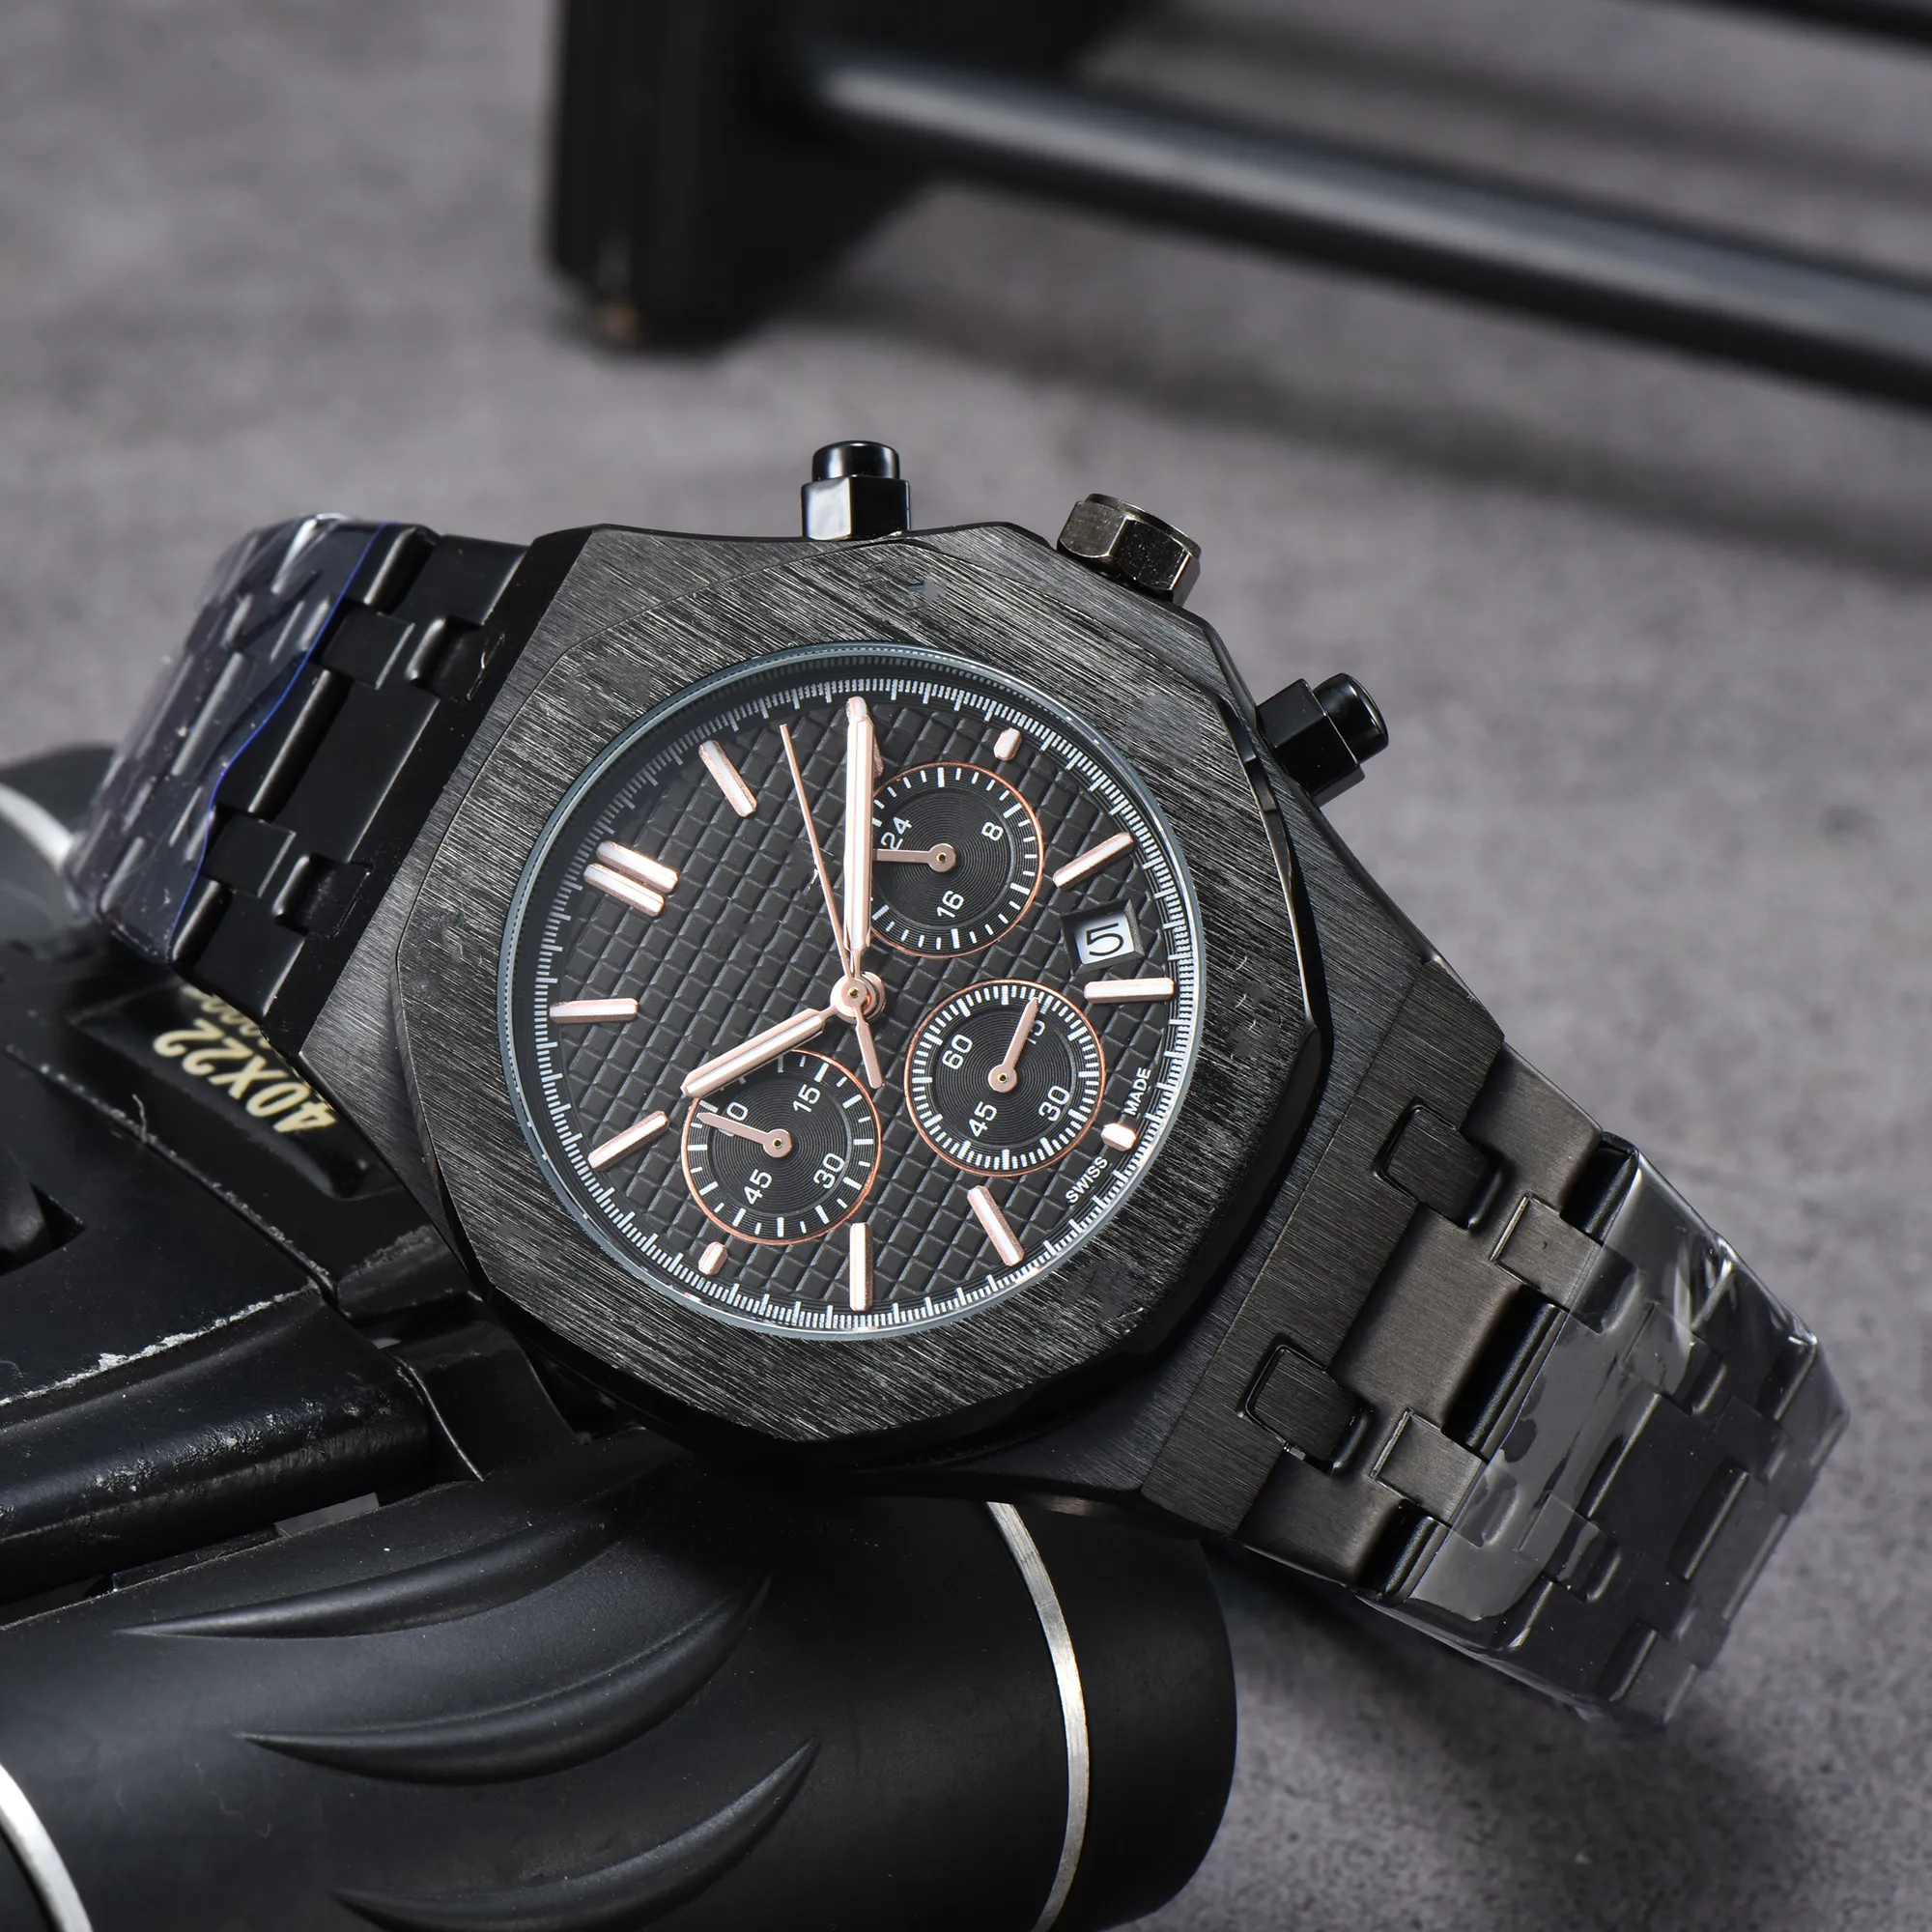 Nouvelle montre de mode hommes automatique mouvement à quartz étanche haute qualité montre-bracelet heure affichage bracelet en métal simple luxe Po227c